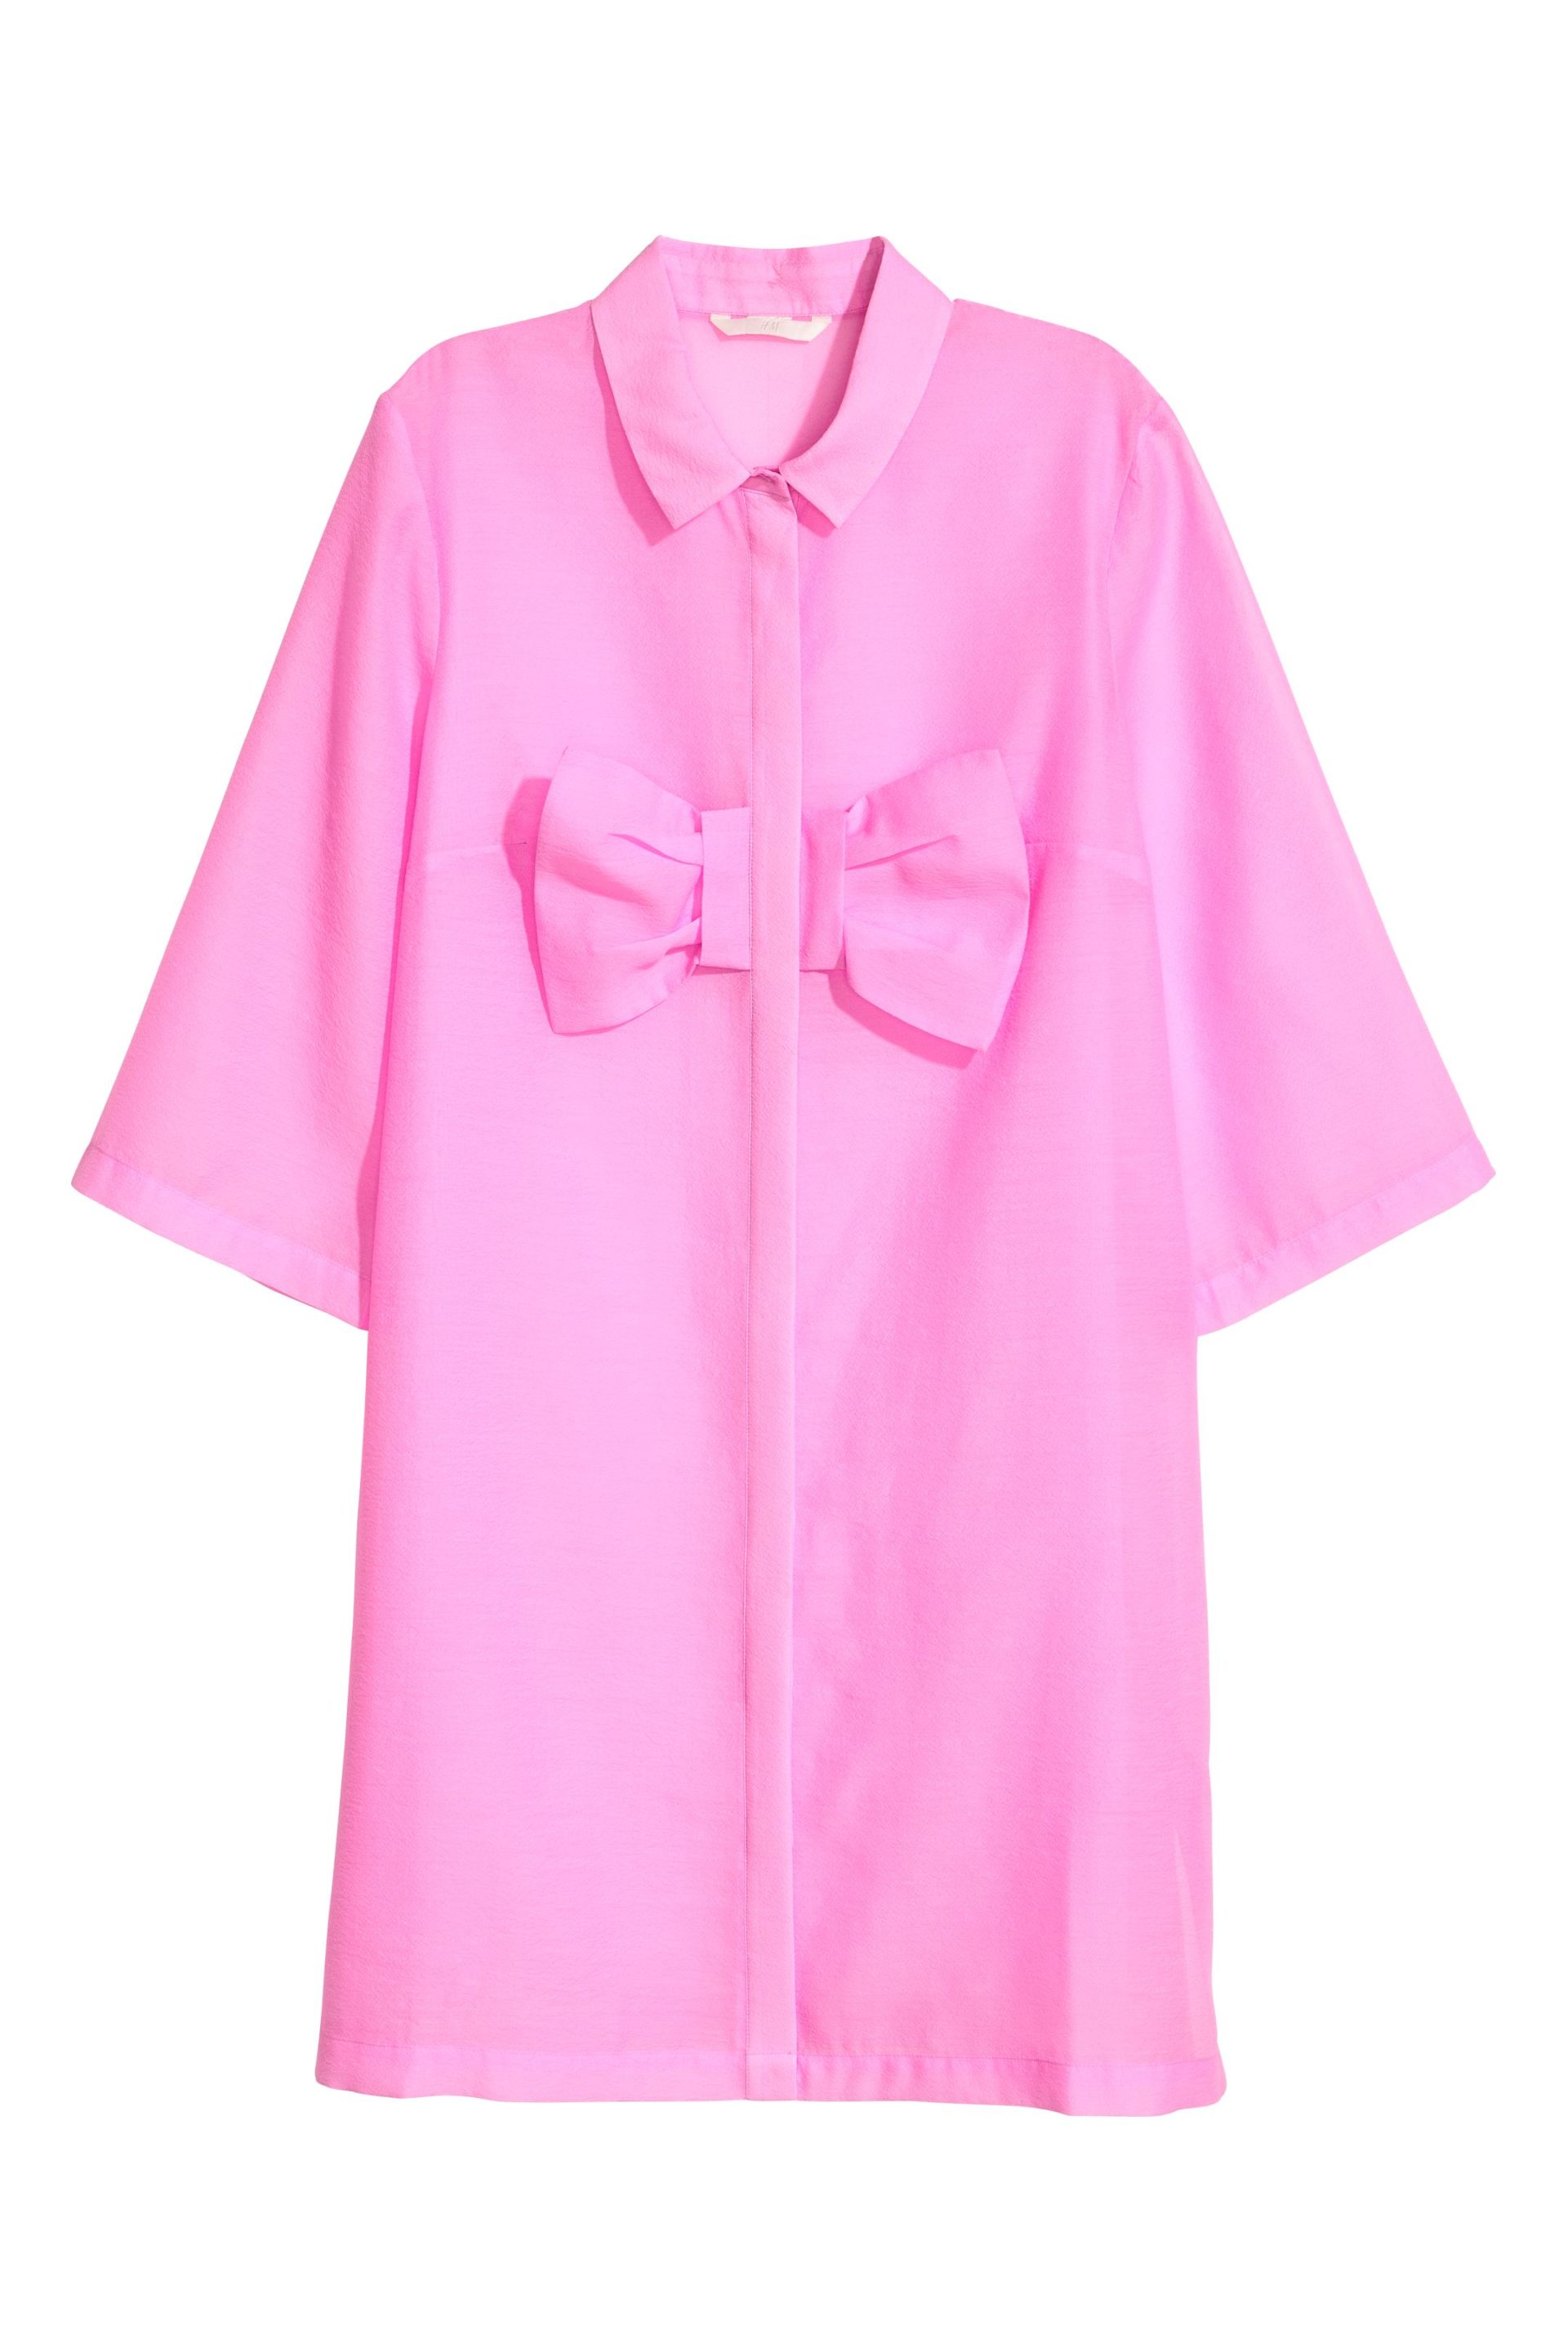 Розовая накидка. Платье розовое HM С бантом. Рубашка h&m с бантом. Платье с бантом h&m. Блузка HM студио розовая с бантом.